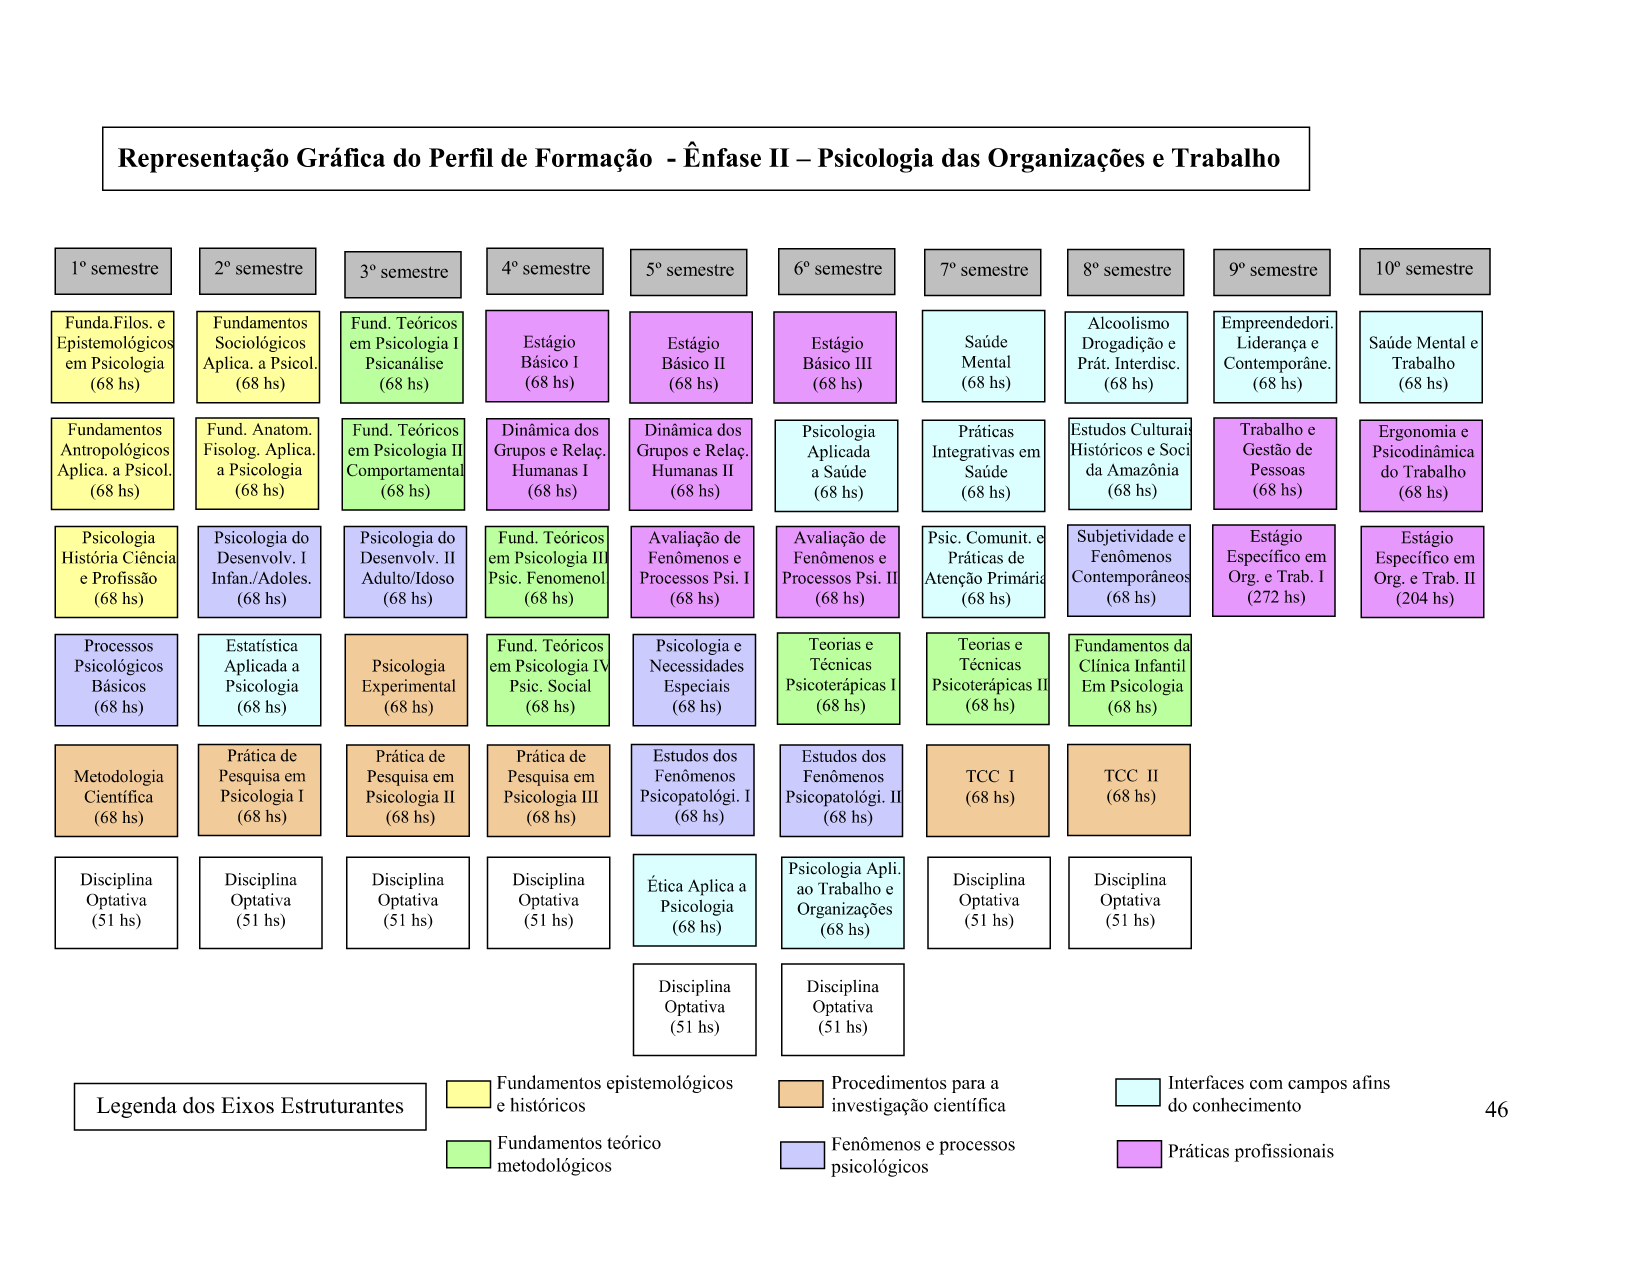 Representação gráfica do perfil de formação - Ênfase I I- Psicologia da Saúde